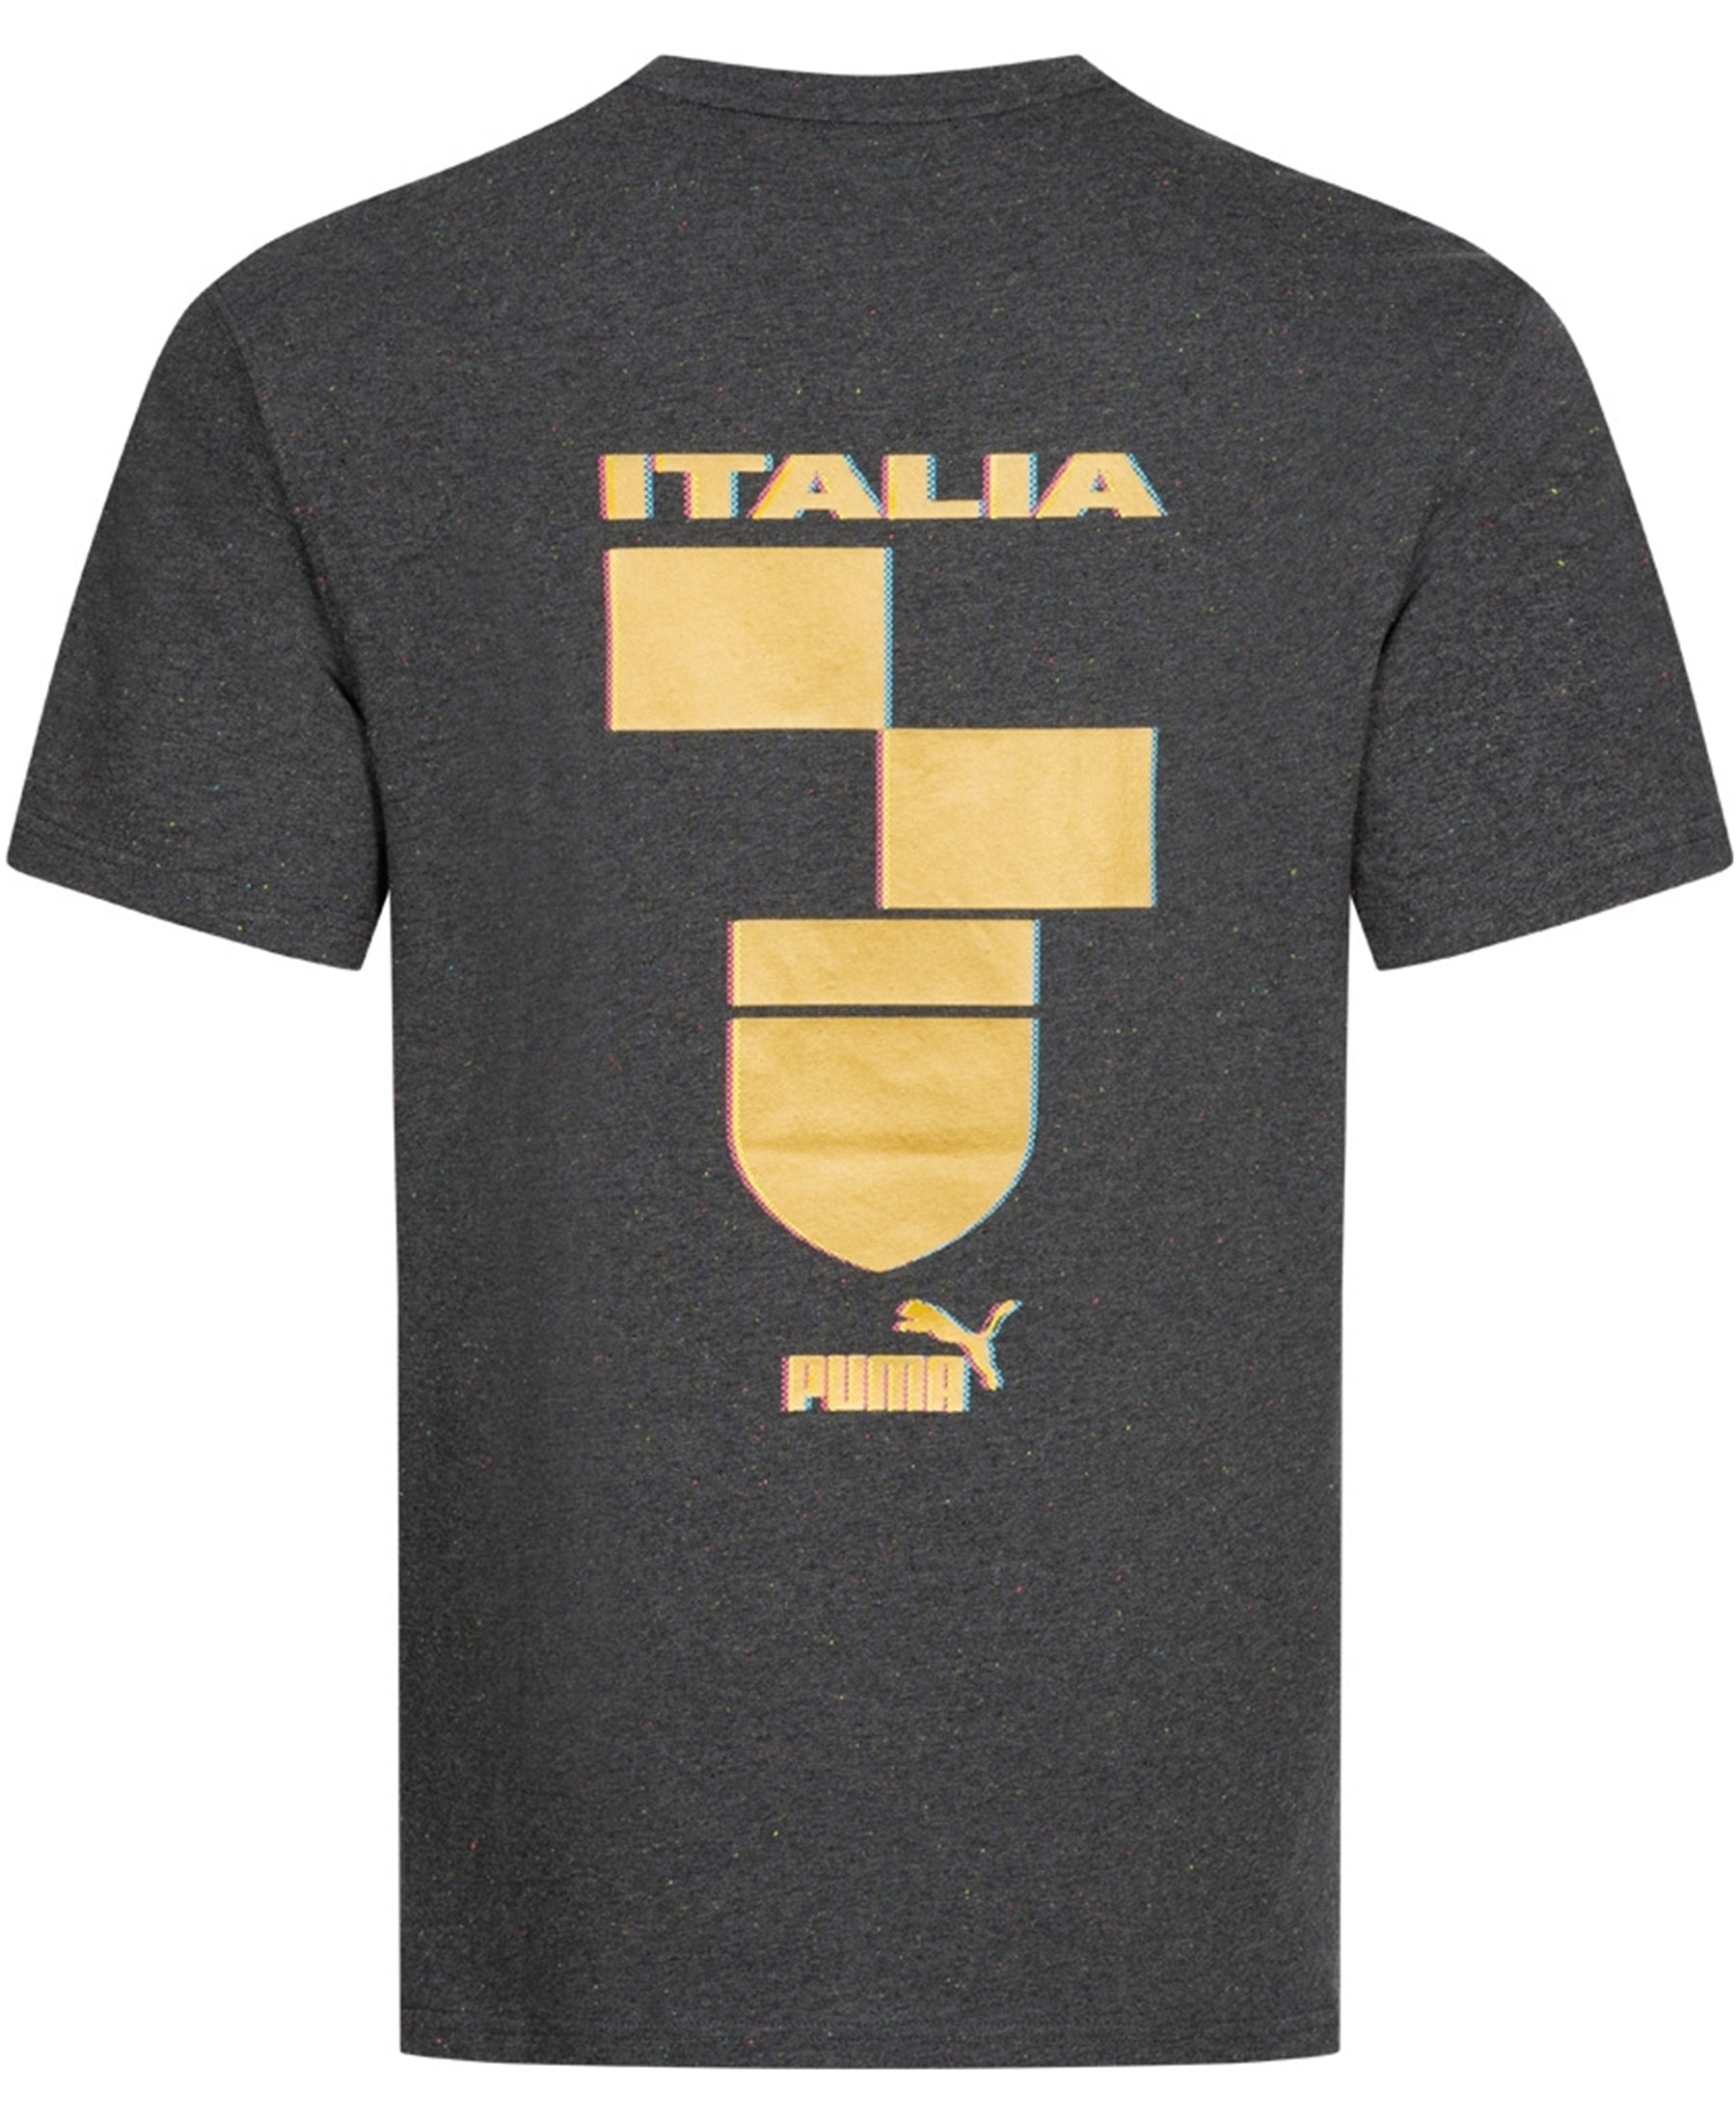 Das Puma Italien FIGC FTBLCulture T-Shirt (767134_09) ist ein Muss für alle Fans der italienischen Nationalmannschaft. Mit seinem stilvollen Design und dem FIGC-Logo zeigst du deine Unterstützung für die Squadra Azzurra. Dieses T-Shirt ist nicht nur ein Ausdruck deiner Leidenschaft für Fußball, sondern bietet auch hohen Tragekomfort dank des weichen Materials und des bequemen Schnitts. Zeige deine Verbundenheit mit Italien und genieße die Vorzüge dieses hochwertigen T-Shirts.